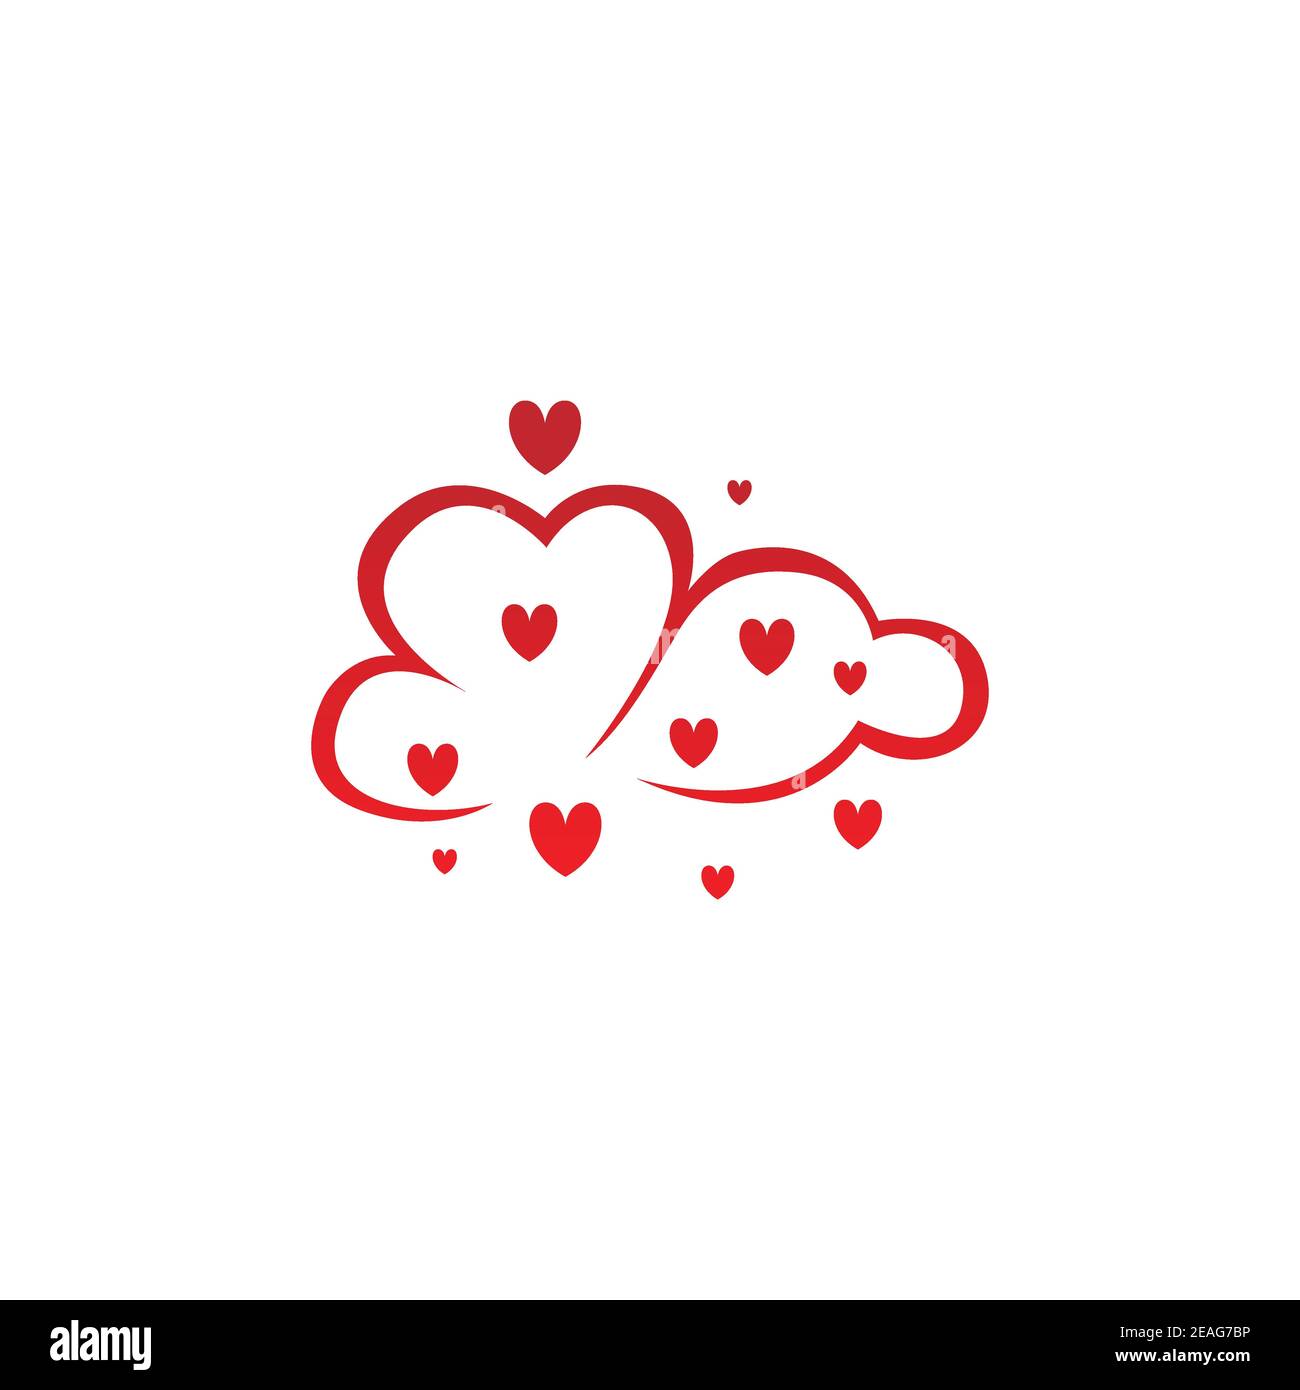 Rote Farbe kreative Wolke der Liebe Logo Design Illustration. Wolke mit roten Herzen Form repräsentieren eine Liebe Konzept Design-Logo-Vektor Stock Vektor